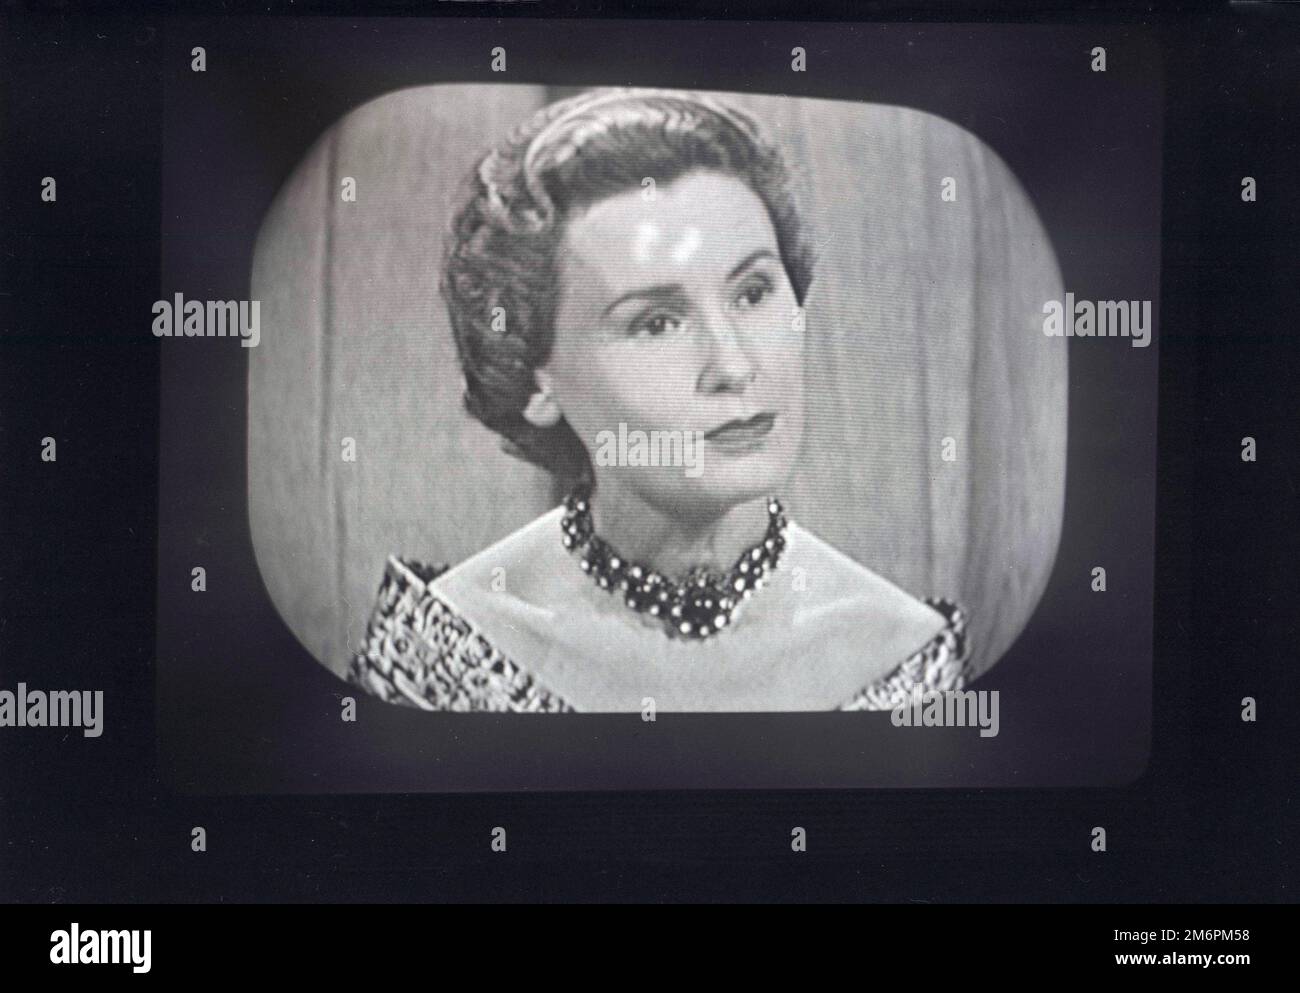 1950er, historisch, Lady Isobel Barnett im BBC-Fernsehen. Eine qualifizierte Ärztin, ihr Auftritt als Panelmitglied in der fernsehsendung, Was ist meine Meinung? Sie wurde zu einer beliebten Figur, die auf der Leinwand als elegant, witzig und aristokratisch auftrat, obwohl ihr Titel tatsächlich aus der Ritterschaft ihres Mannes stammte. Sie war so beliebt, dass sie 1956 zur TV-Persönlichkeit gewählt wurde. Stockfoto